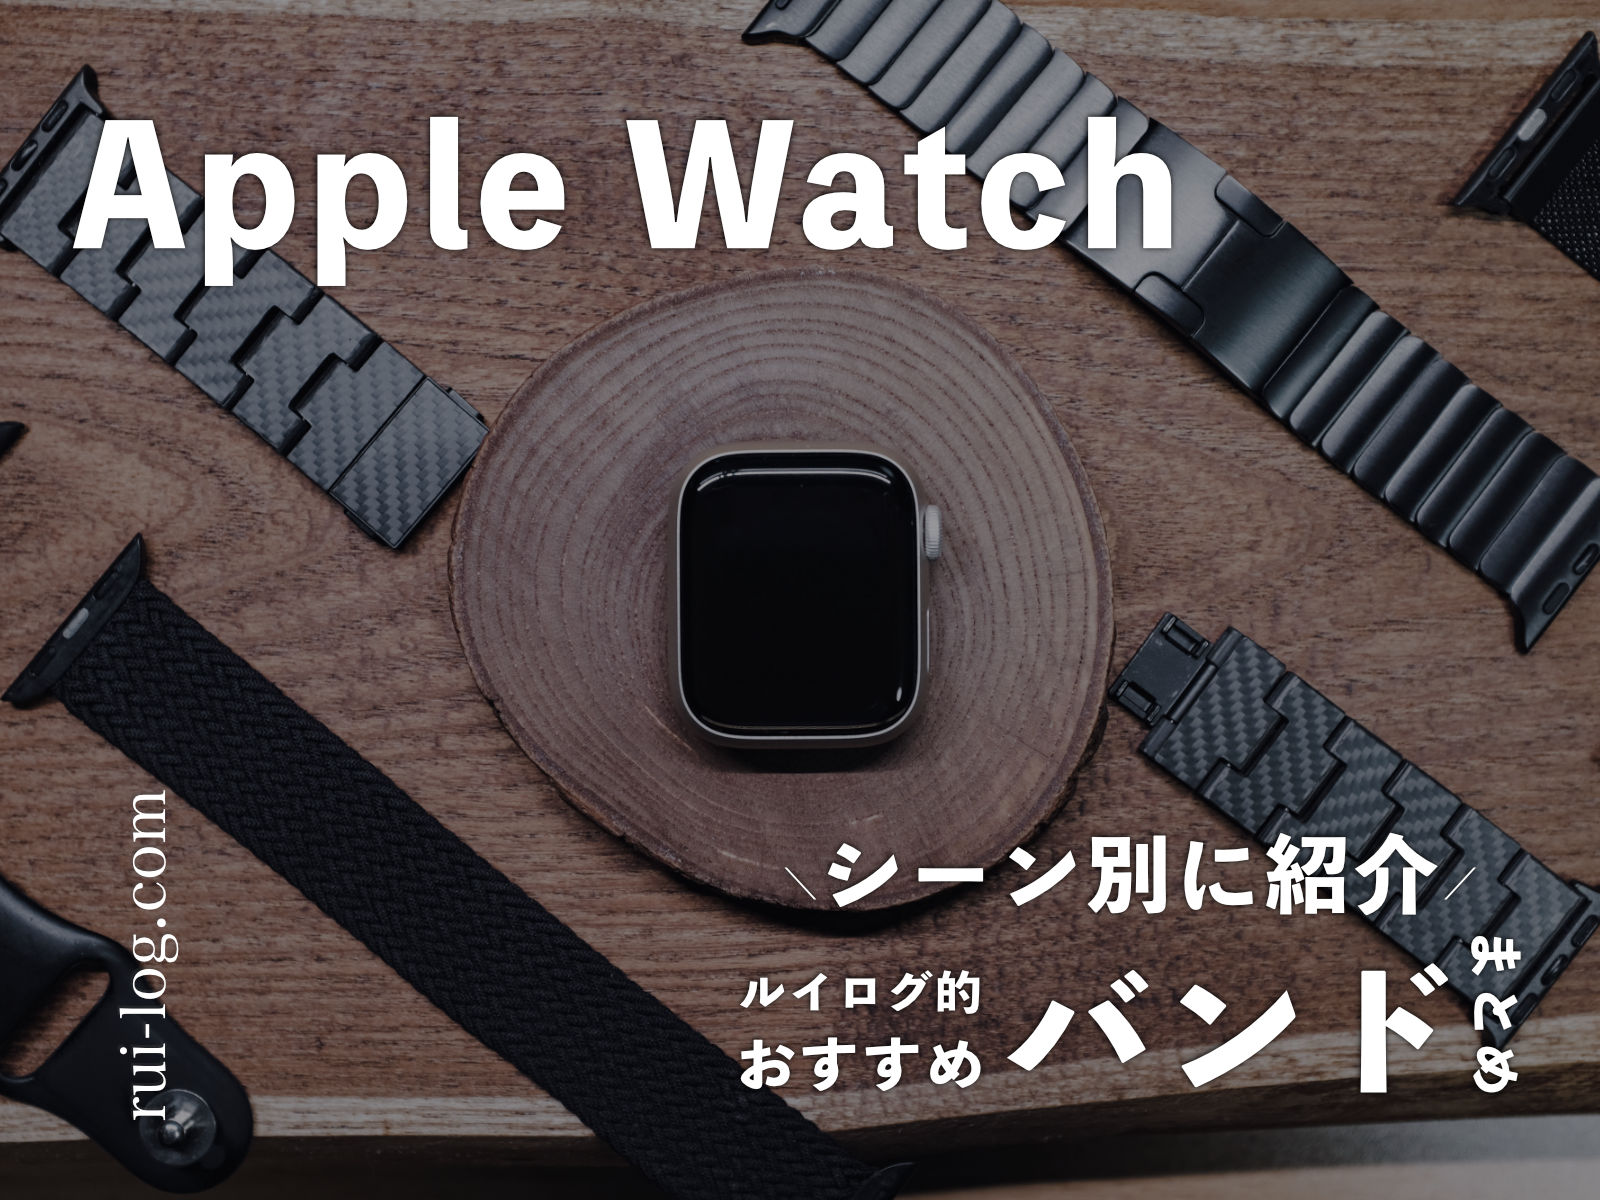 Apple Watch バンドのおすすめをシーン別に紹介